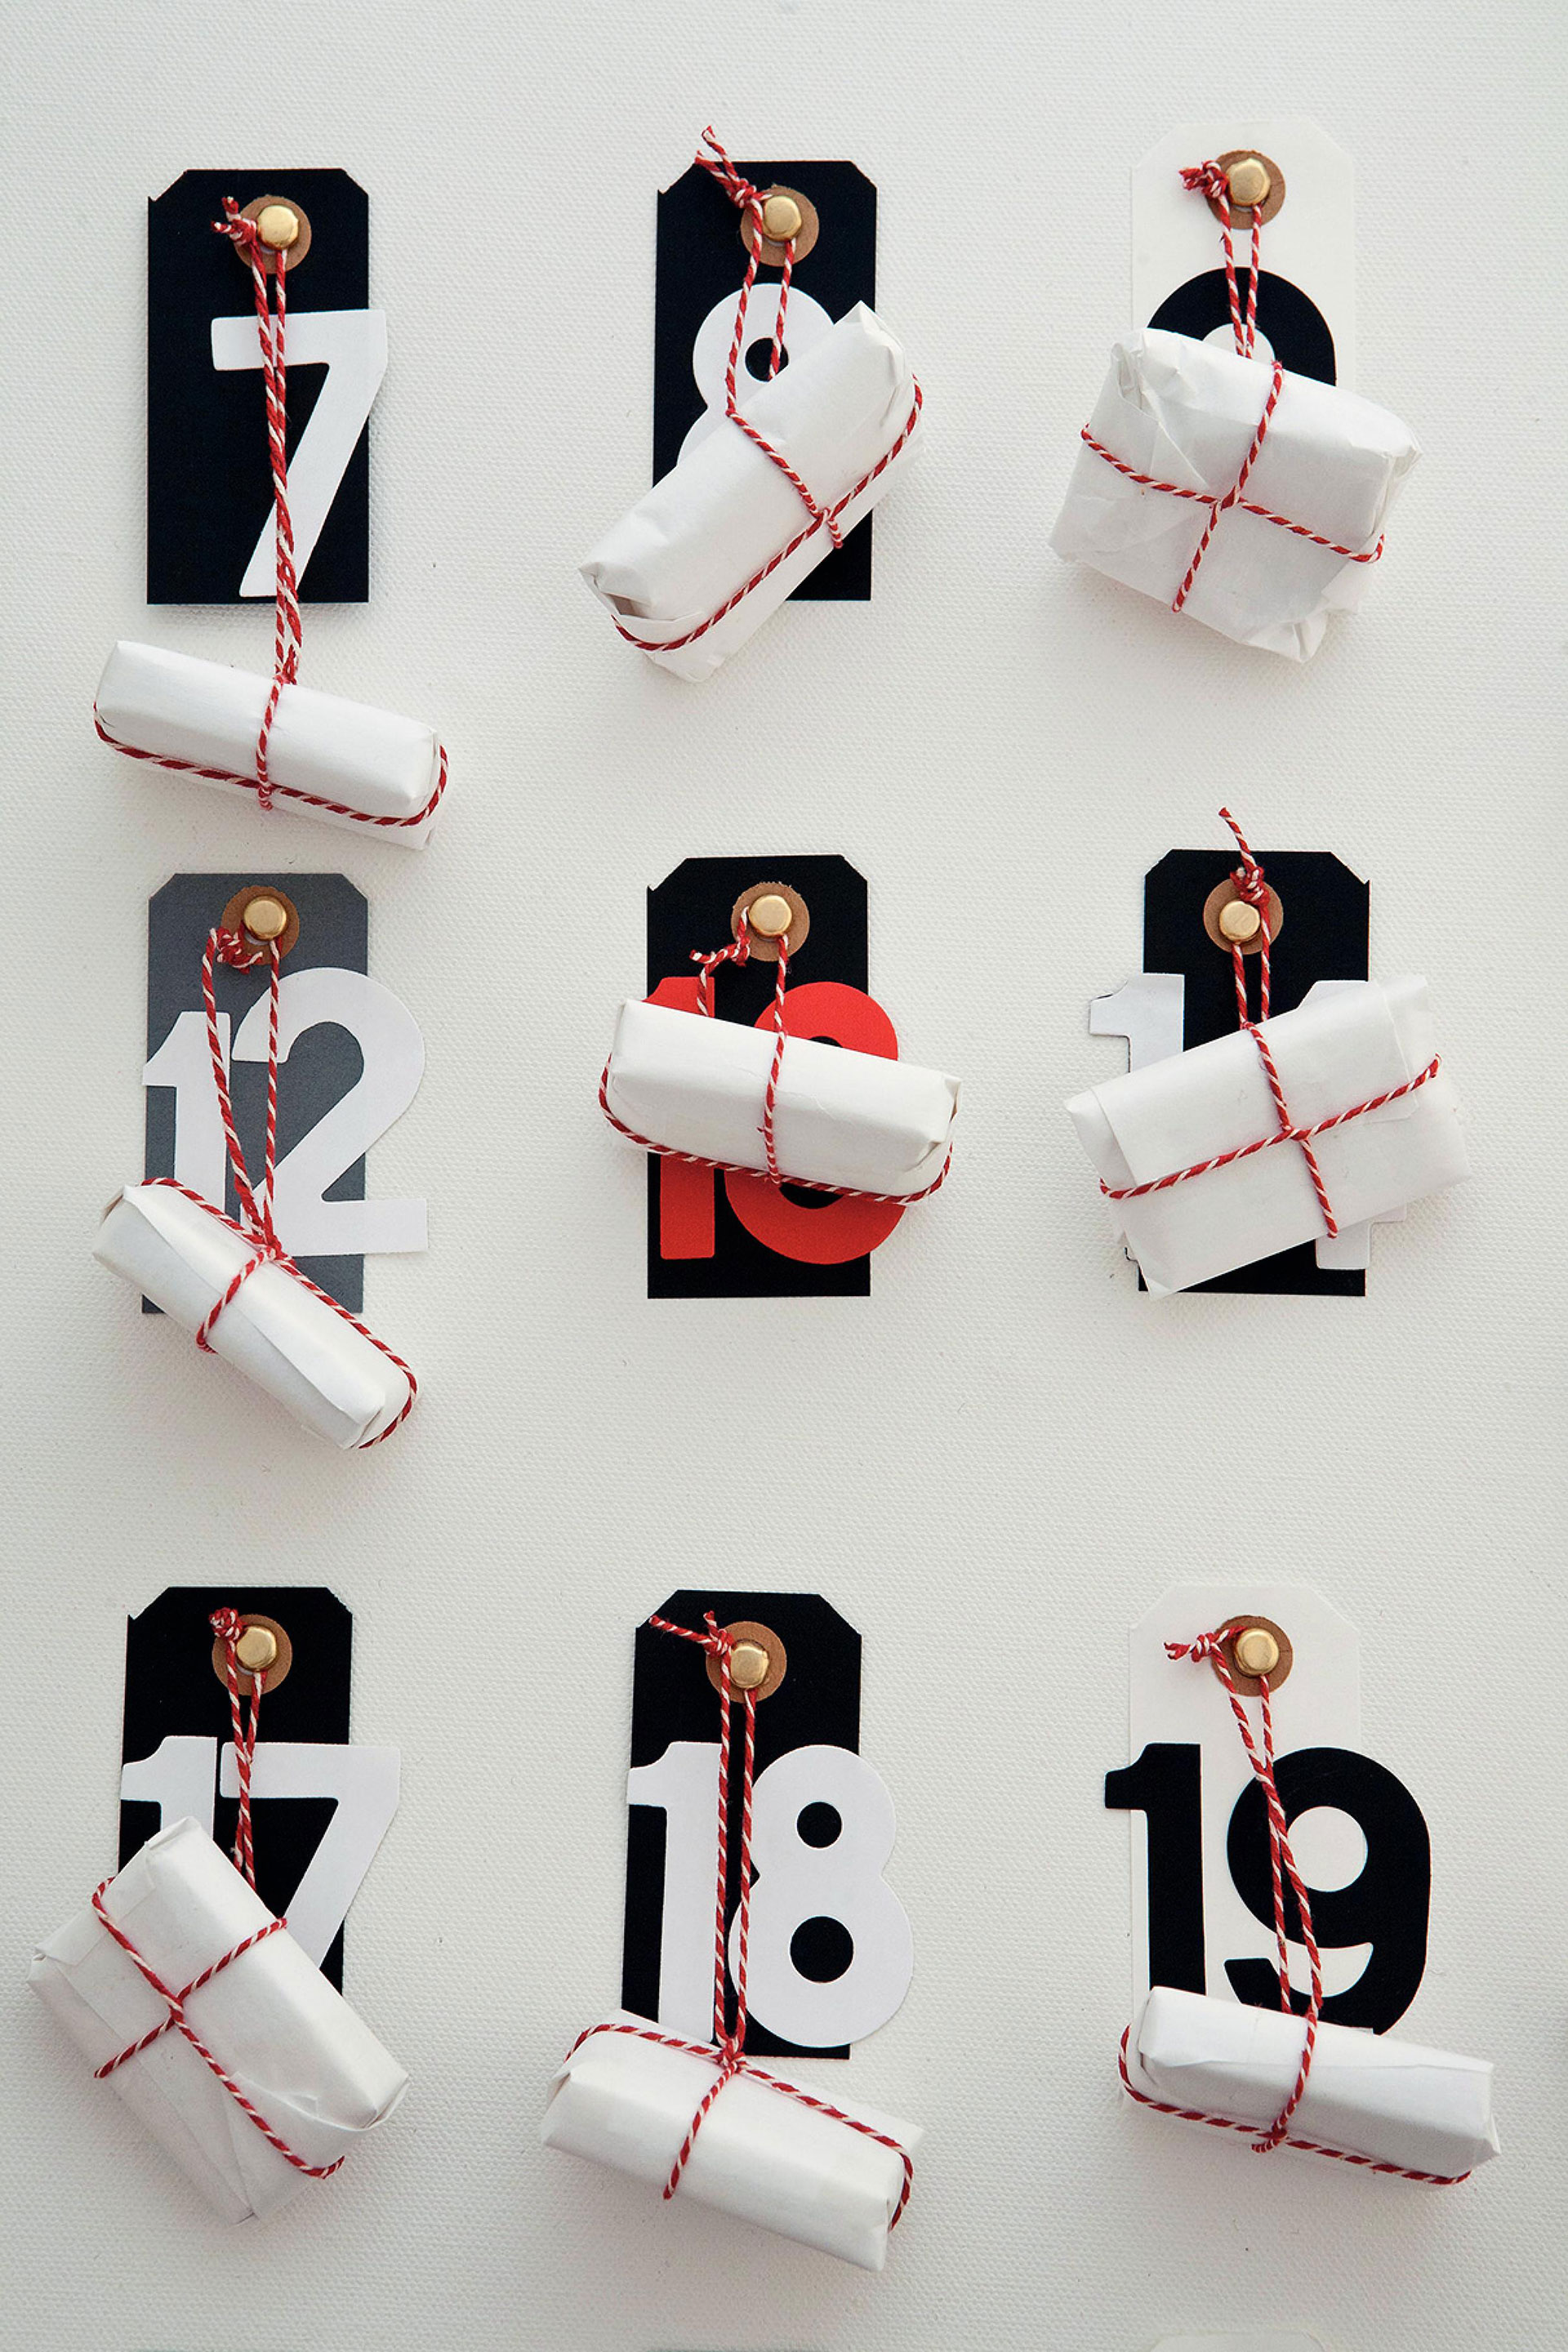 Bild von einem Adventskalender an der Wand mit großen Nummern und eingepackten Geschenken